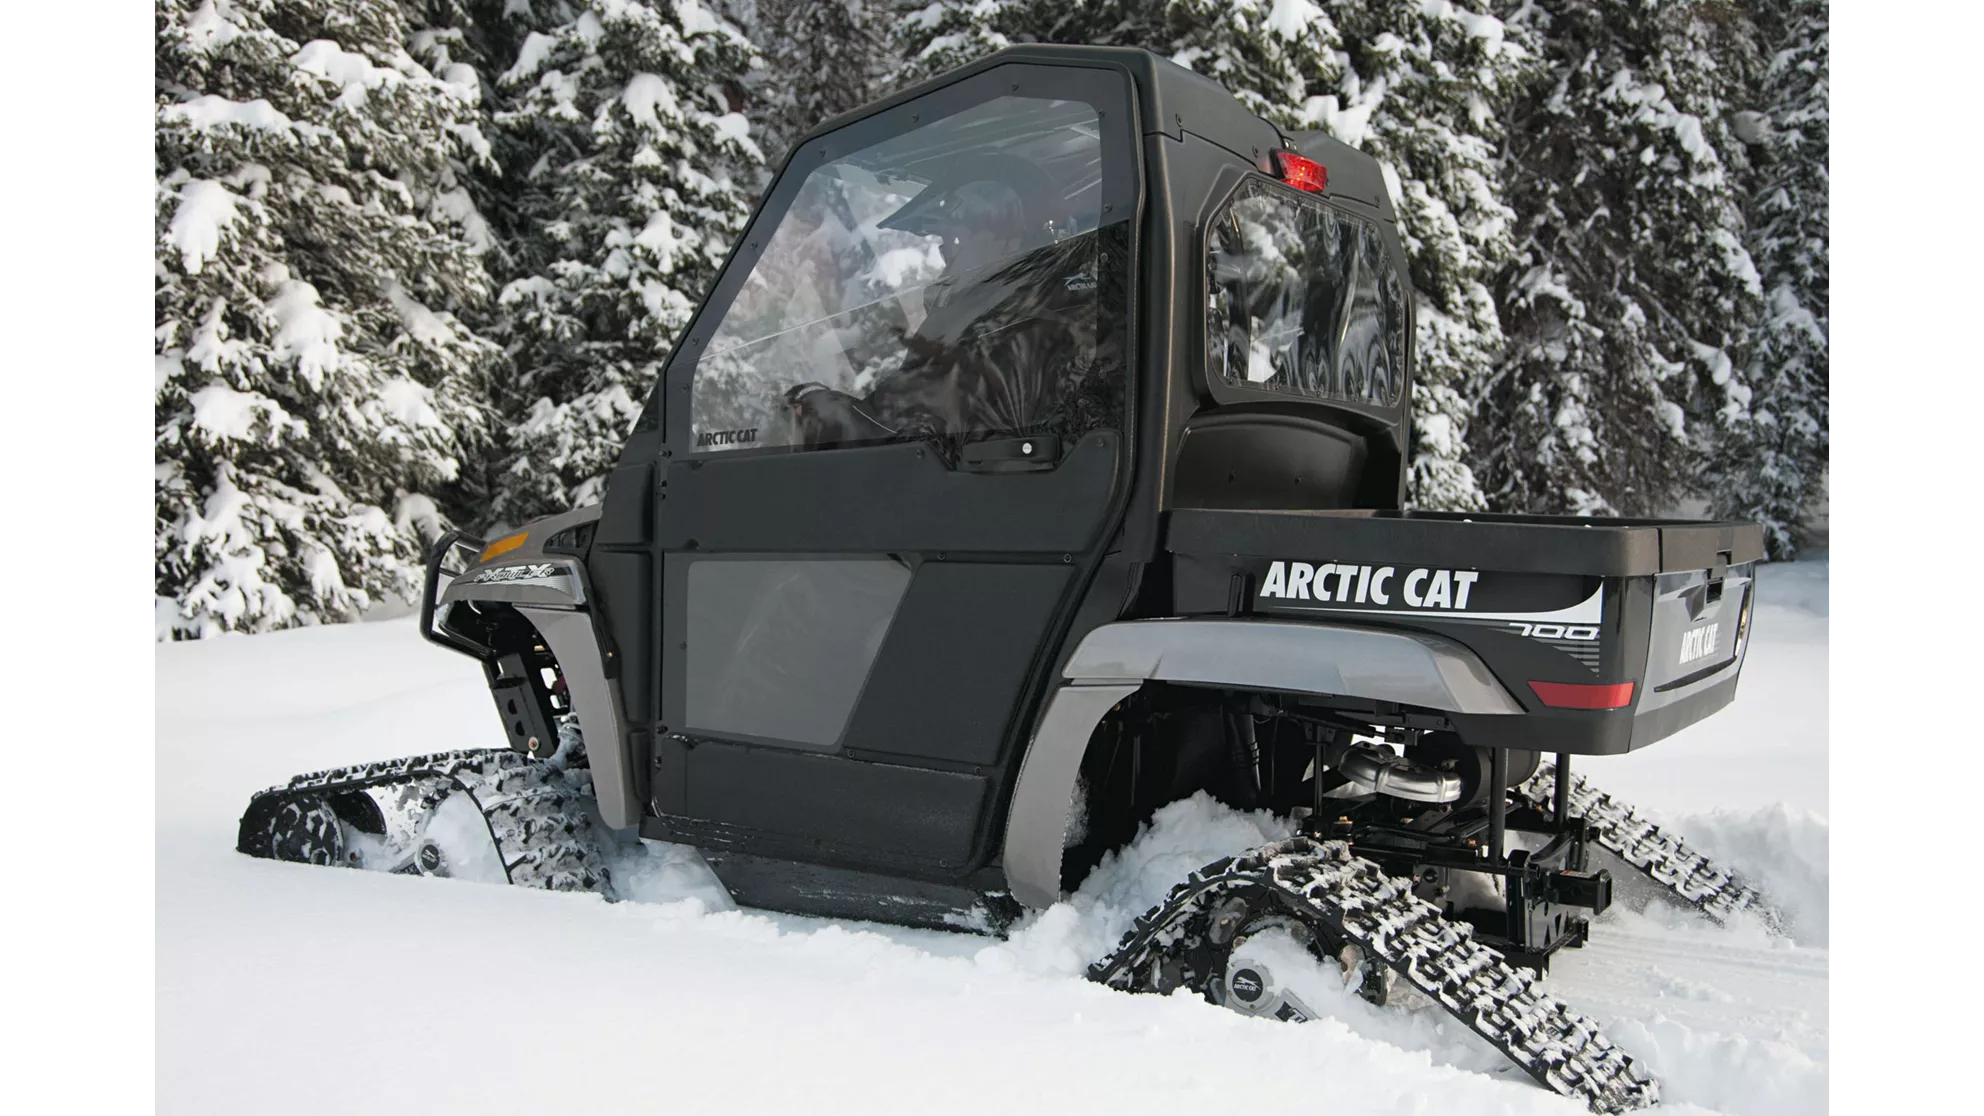 Arctic Cat Prowler 1000i - Resim 5